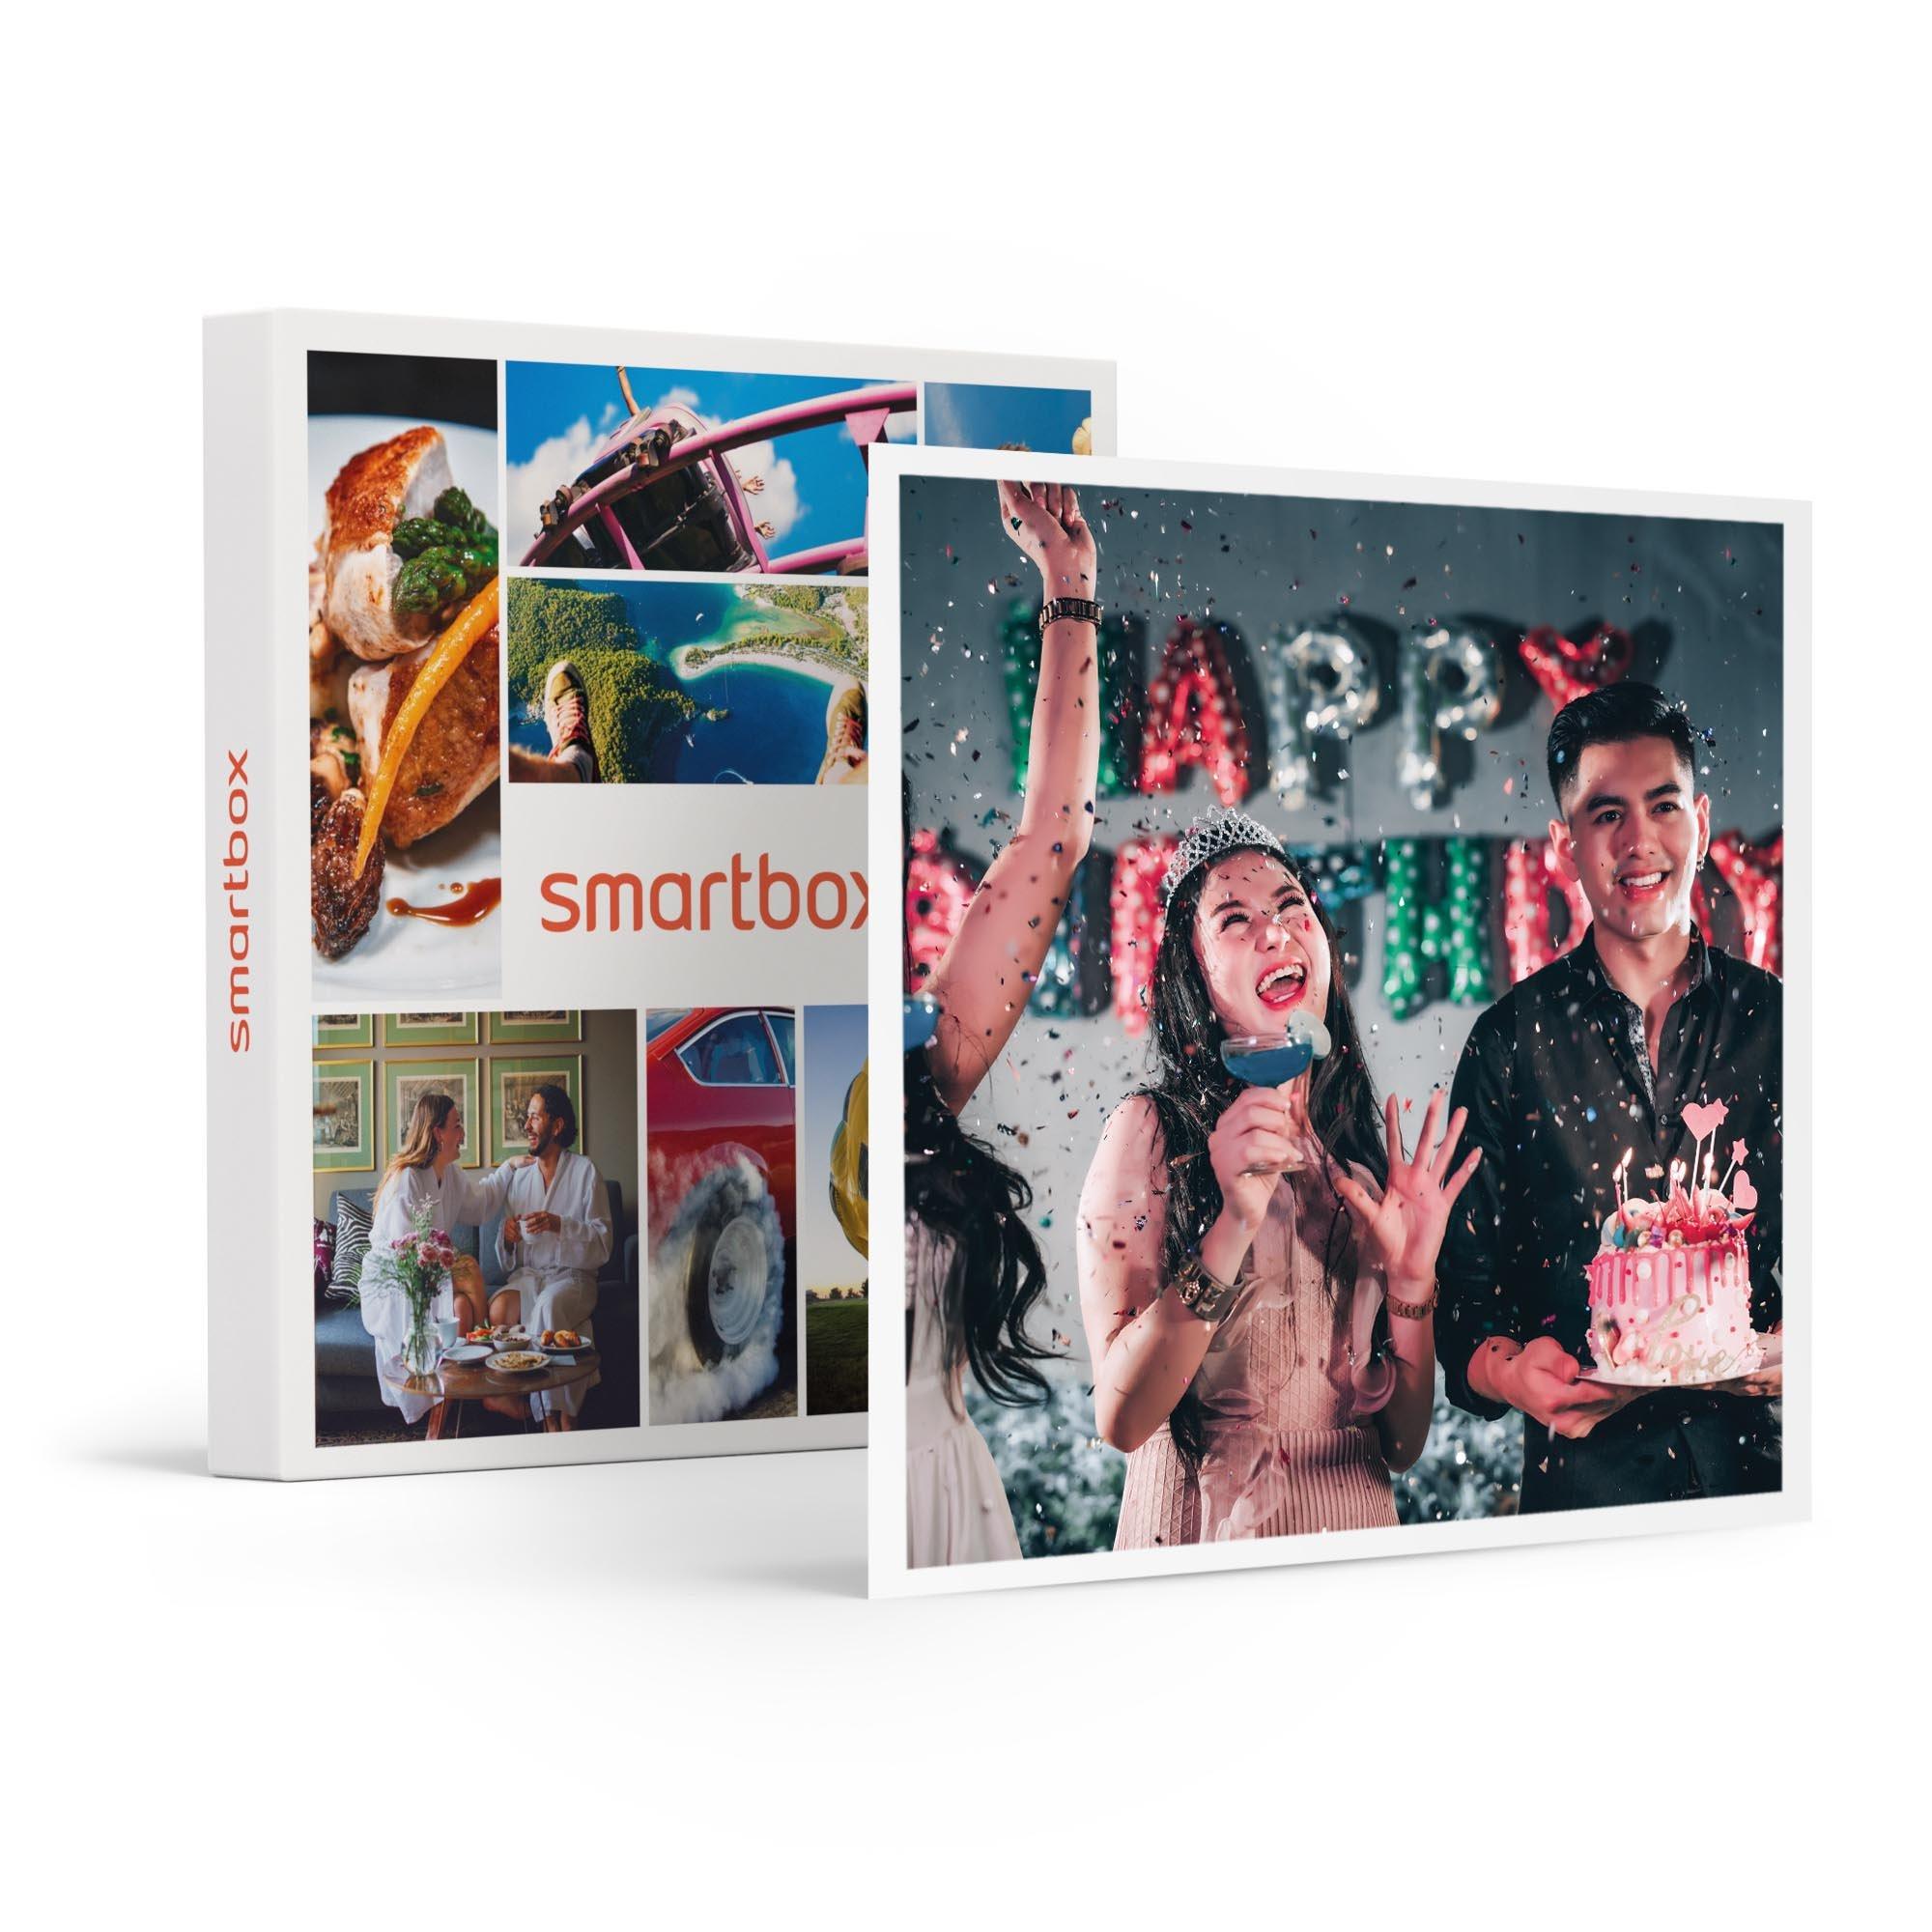 Smartbox Joyeux Anniversaire : Séjours, Soupers, Aventures Et Bien-être Pour Fêter 18 Ans - Coffret Cadeau Unisexe